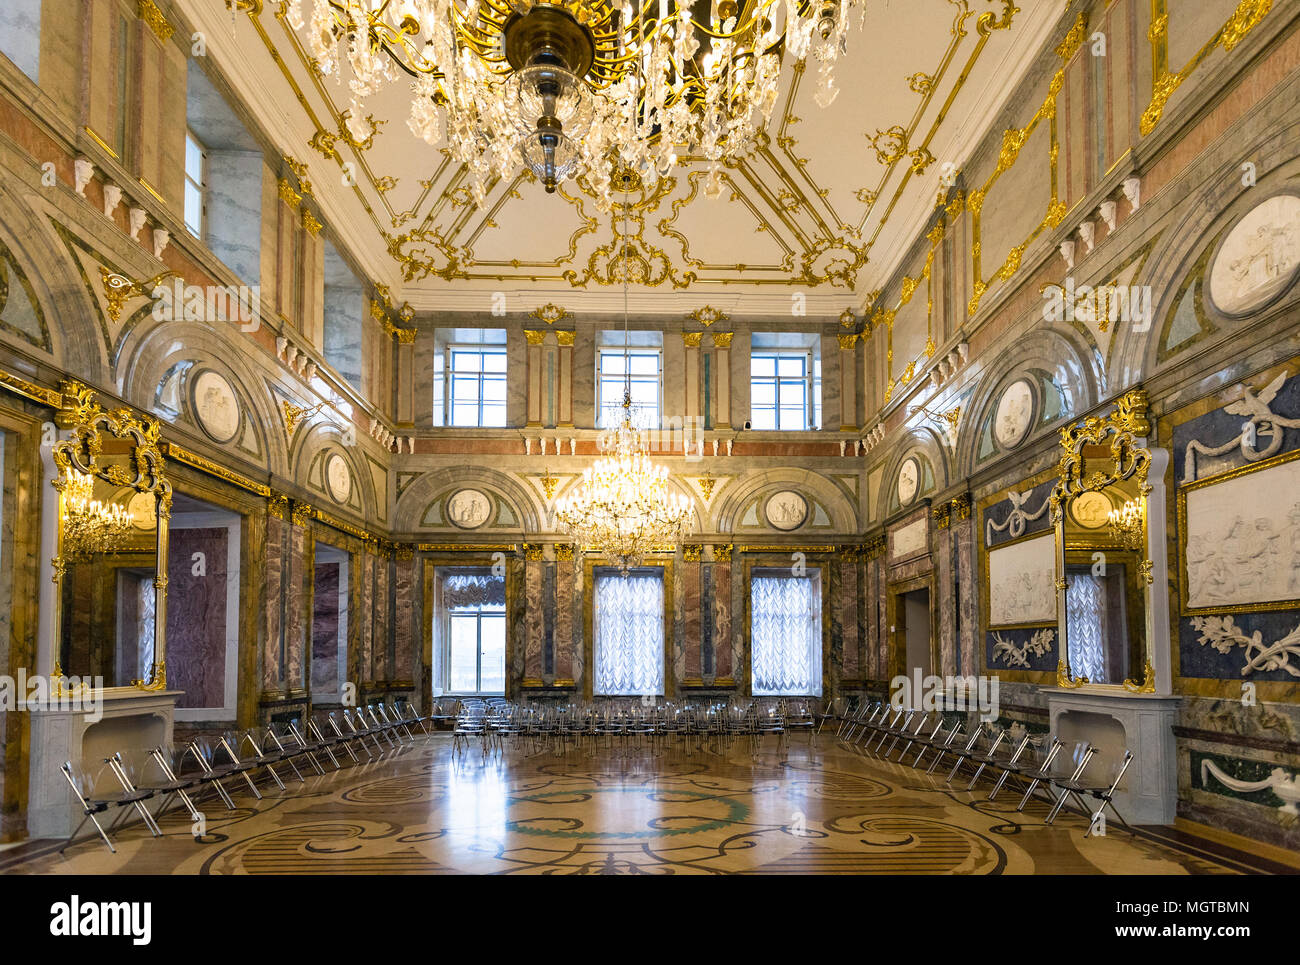 SAINT PETERSBURG, Russia - 19 Marzo 2018: interno del Palazzo di Marmo. Palazzo di marmo è uno dei primi palazzi neoclassici a San Pietroburgo, è b Foto Stock